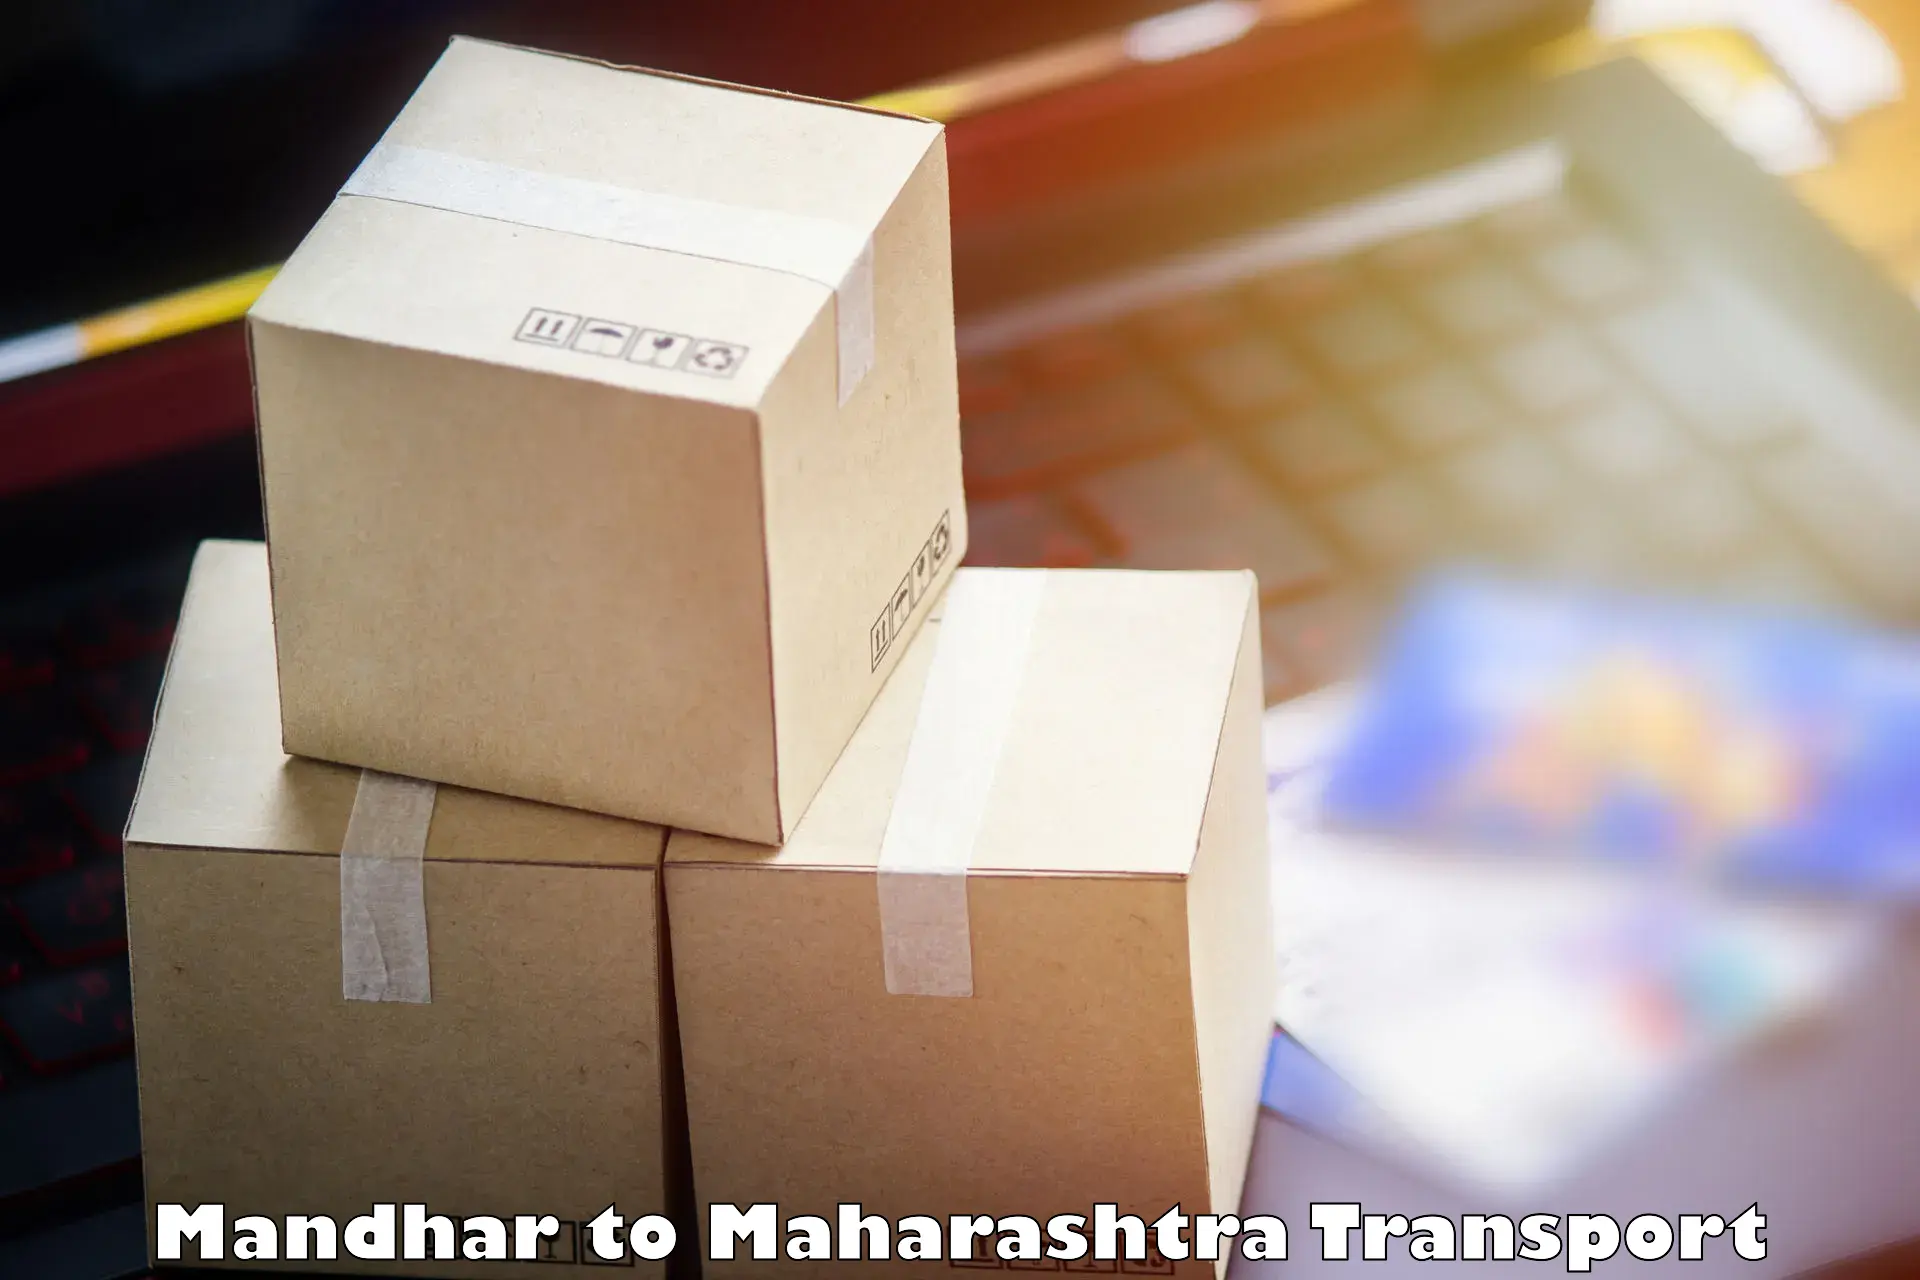 Pick up transport service Mandhar to Igatpuri